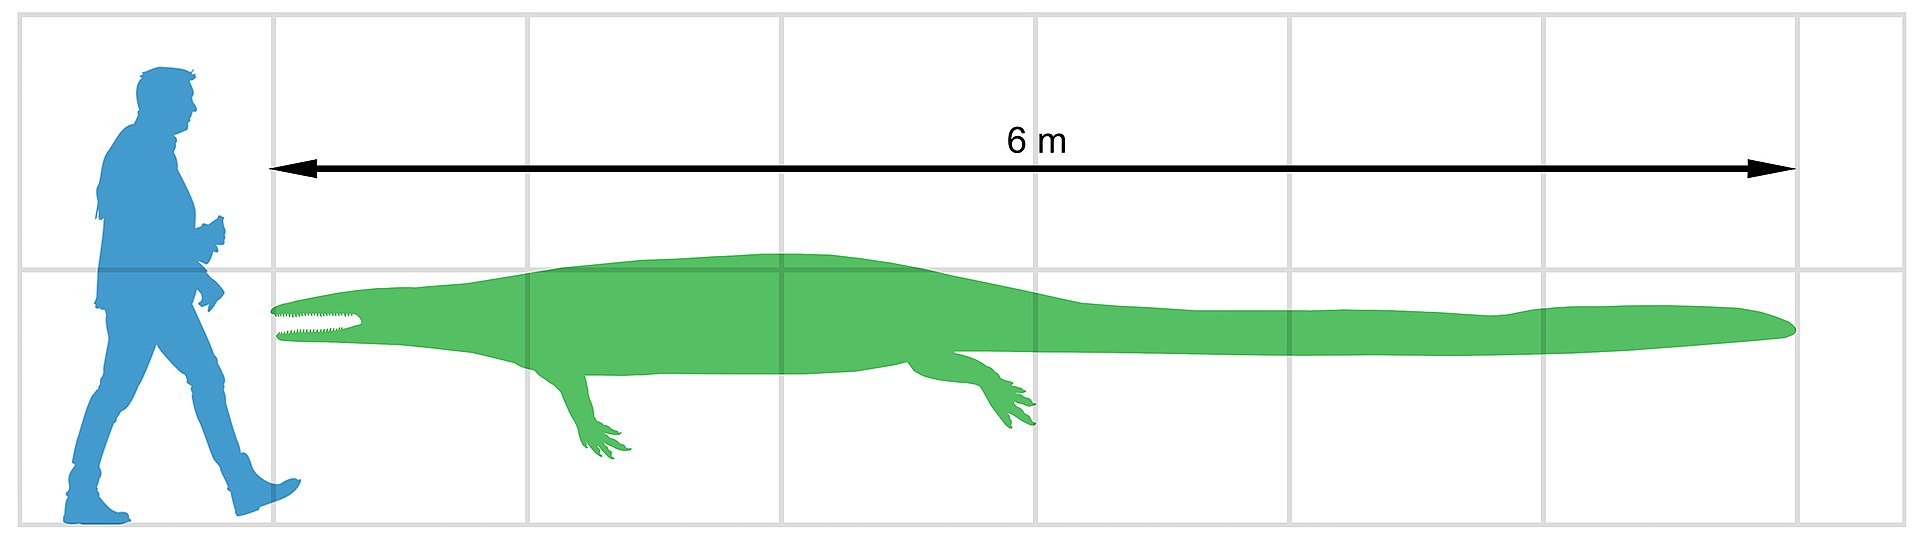 Silueta a velikostní porovnání člověka a tethysaurinního mosasaurida. V tomto případě se jedná o druh Pannoniasaurus inexpectatus, formálně popsaný roku 2012 z území Maďarska. Pravděpodobně se jednalo o blízce příbuzný druh „českého“ mosasaurida z Do